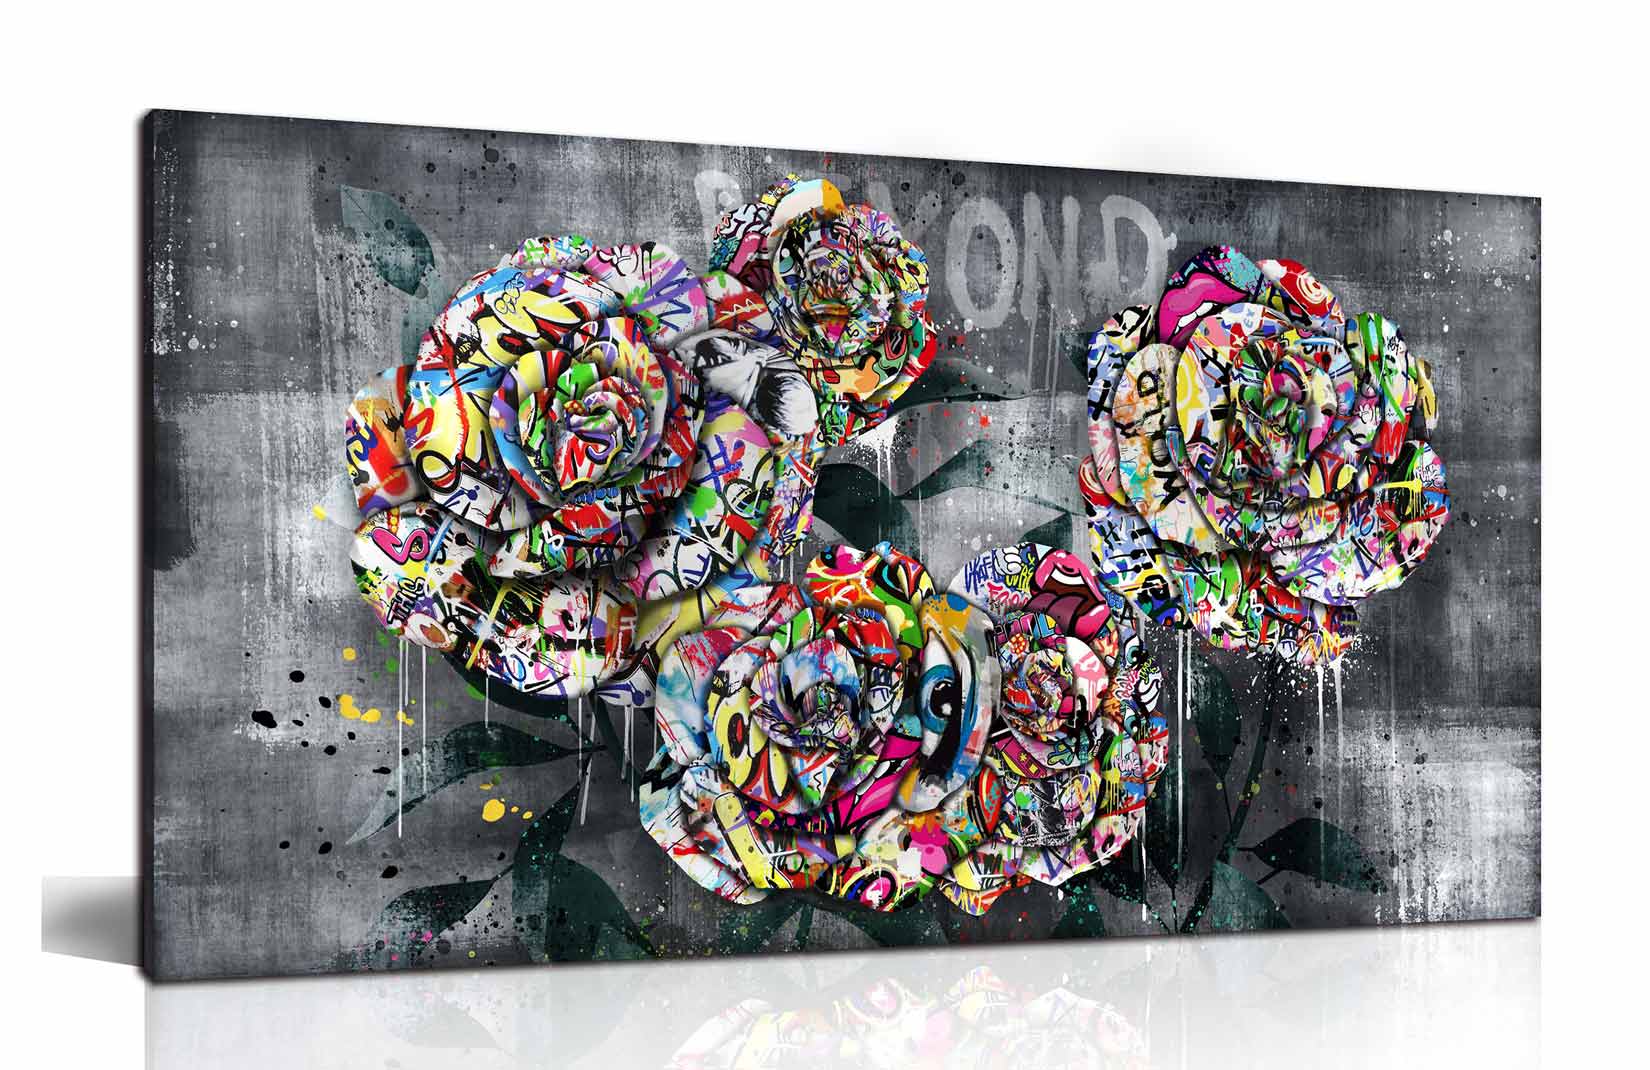 ARTJOY 5ROSES アートパネル 100cm 絵画 インテリア ポップアート グラフィック 絵 北欧 バラ 薔薇 花 ローザ ローズ リビング  玄関